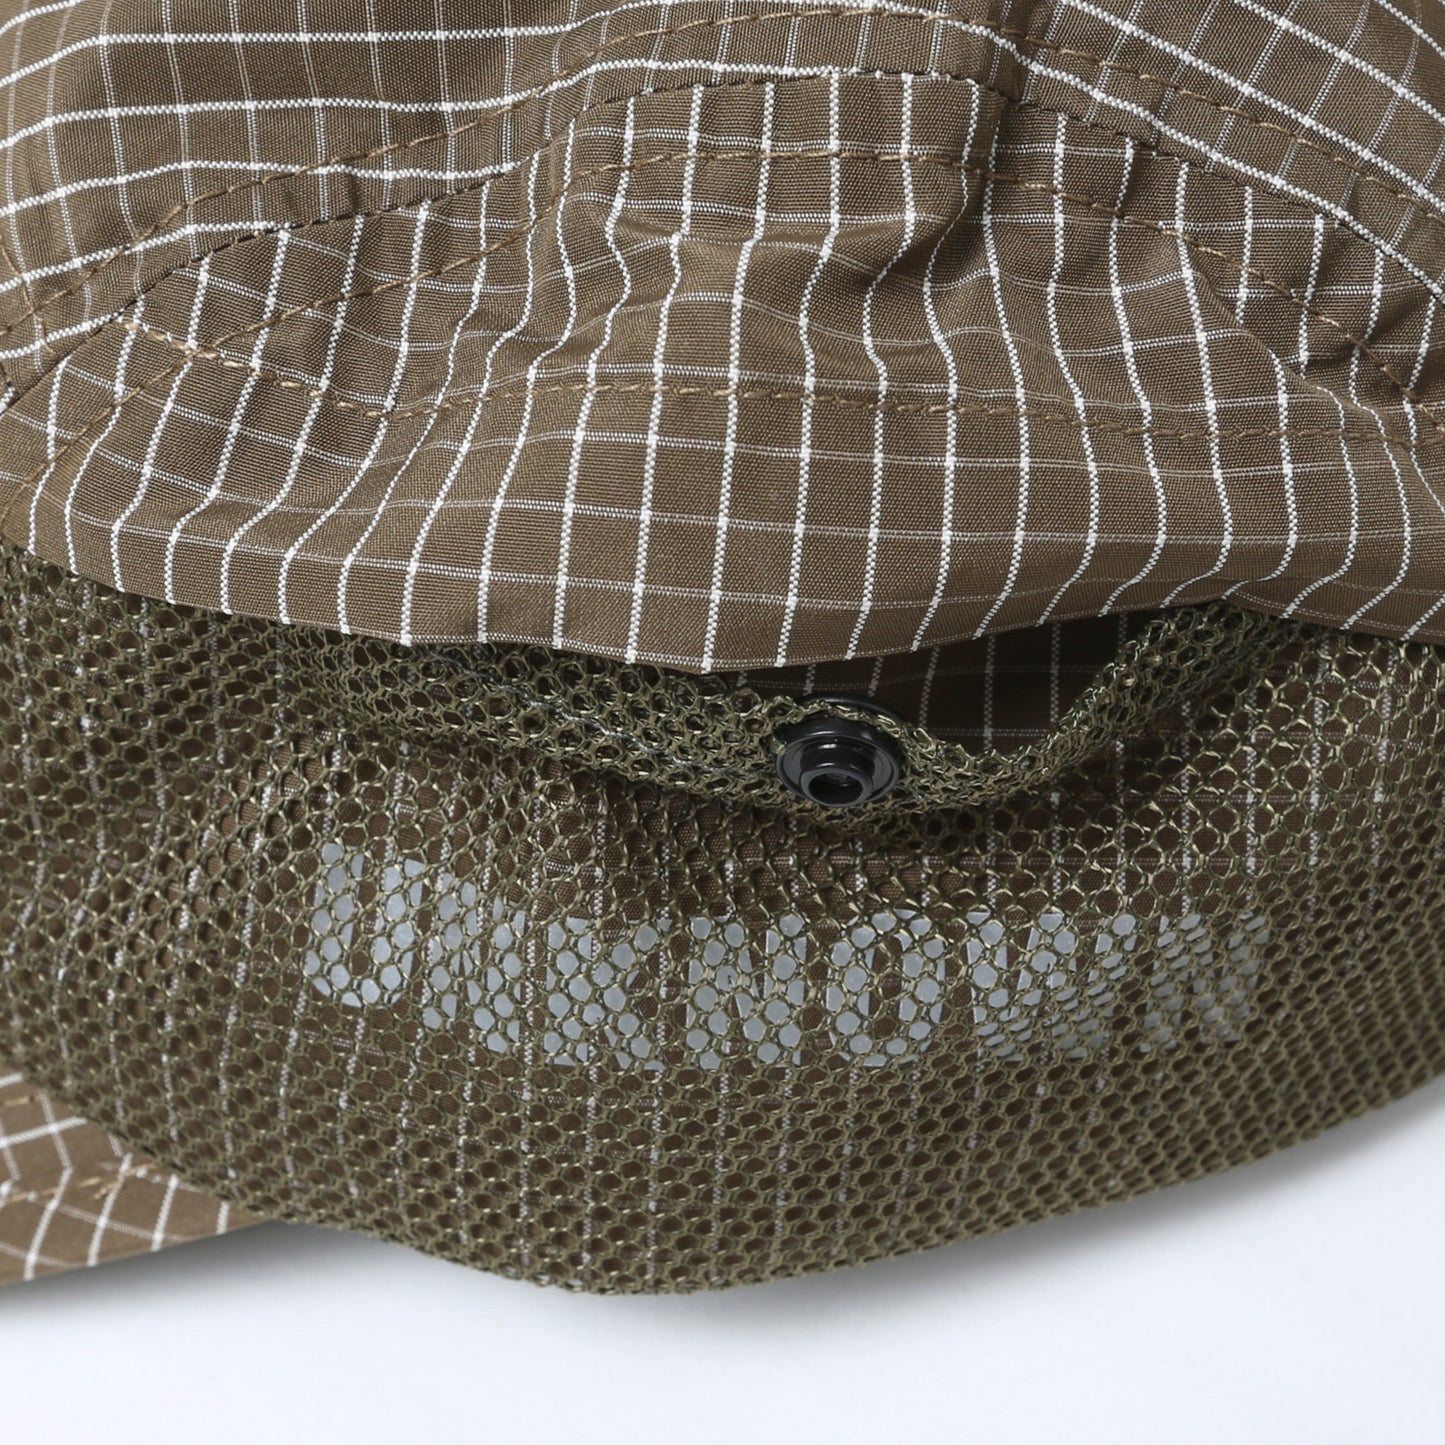 Liberaiders ®(リベレイダース) / GRID CLOTH CAP 70901 BROWN